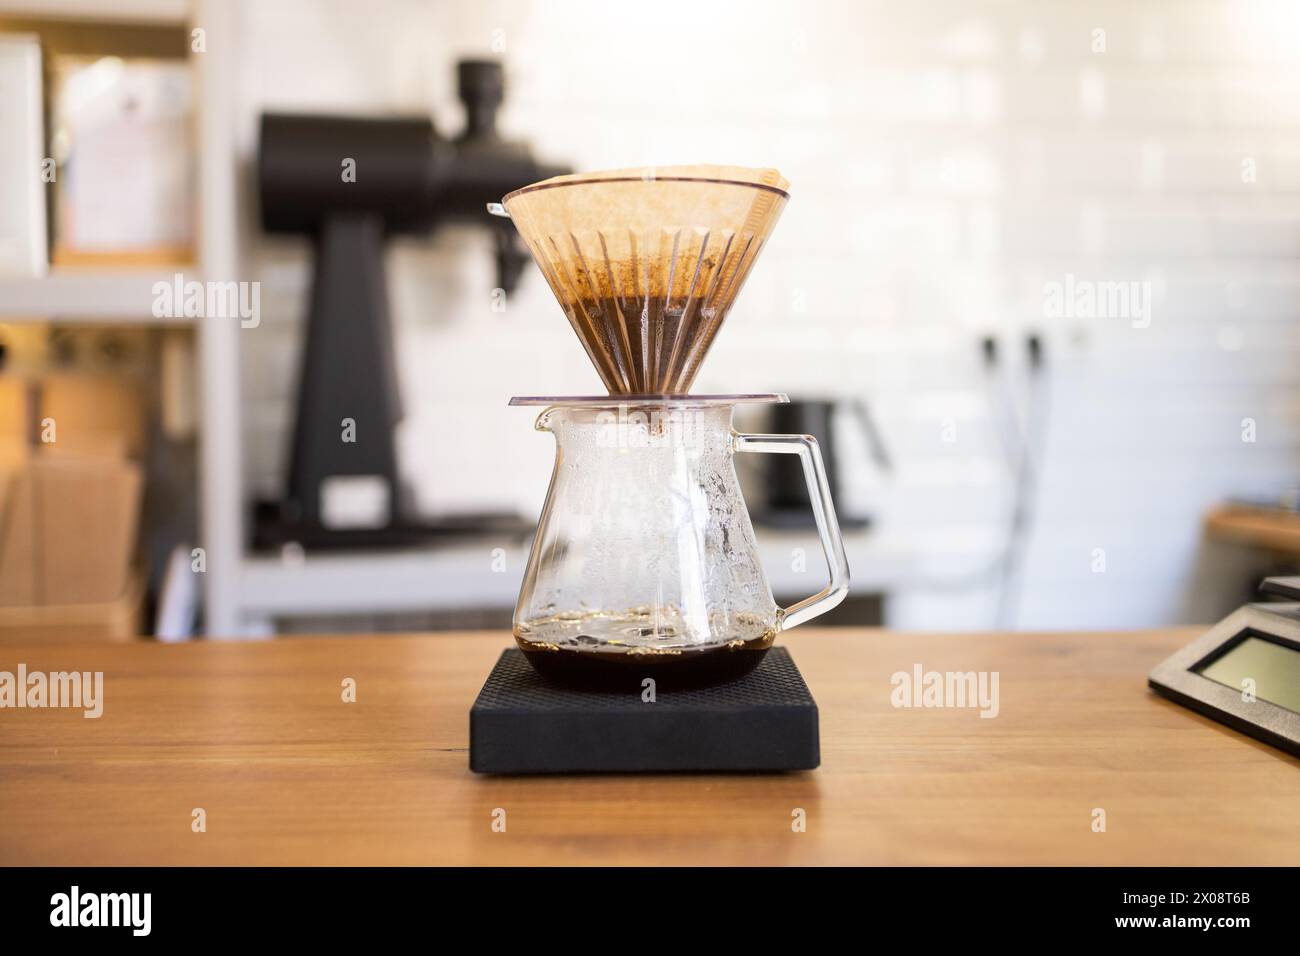 Une carafe à café en verre avec un filtre d'égouttement rempli de café moulu, réglée sur une balance numérique lors d'un processus de préparation manuelle dans un environnement de café moderne Banque D'Images